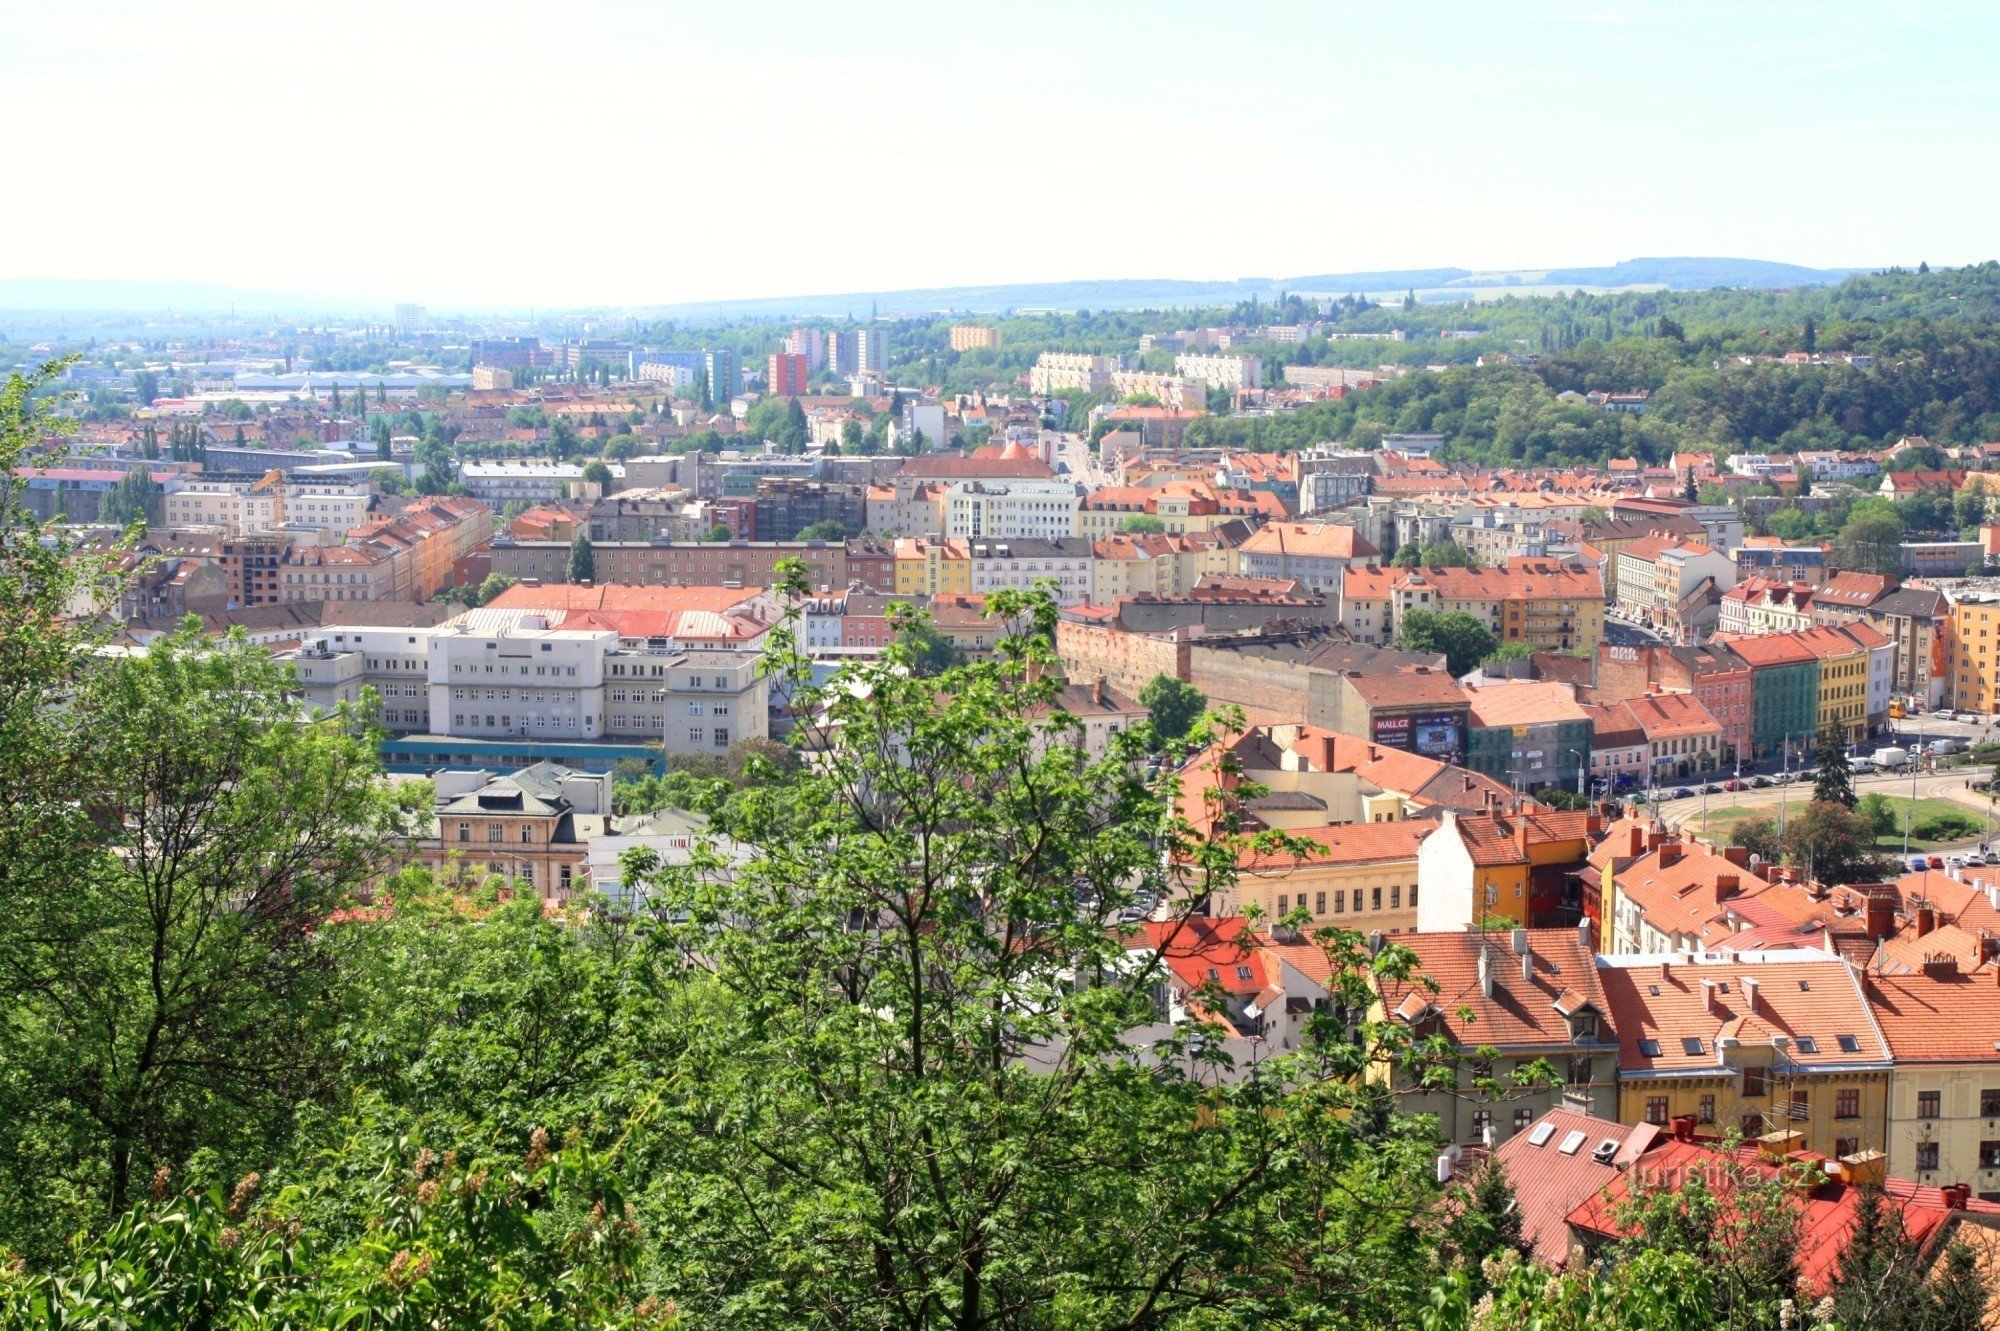 Näkymä Brnon eteläosaan